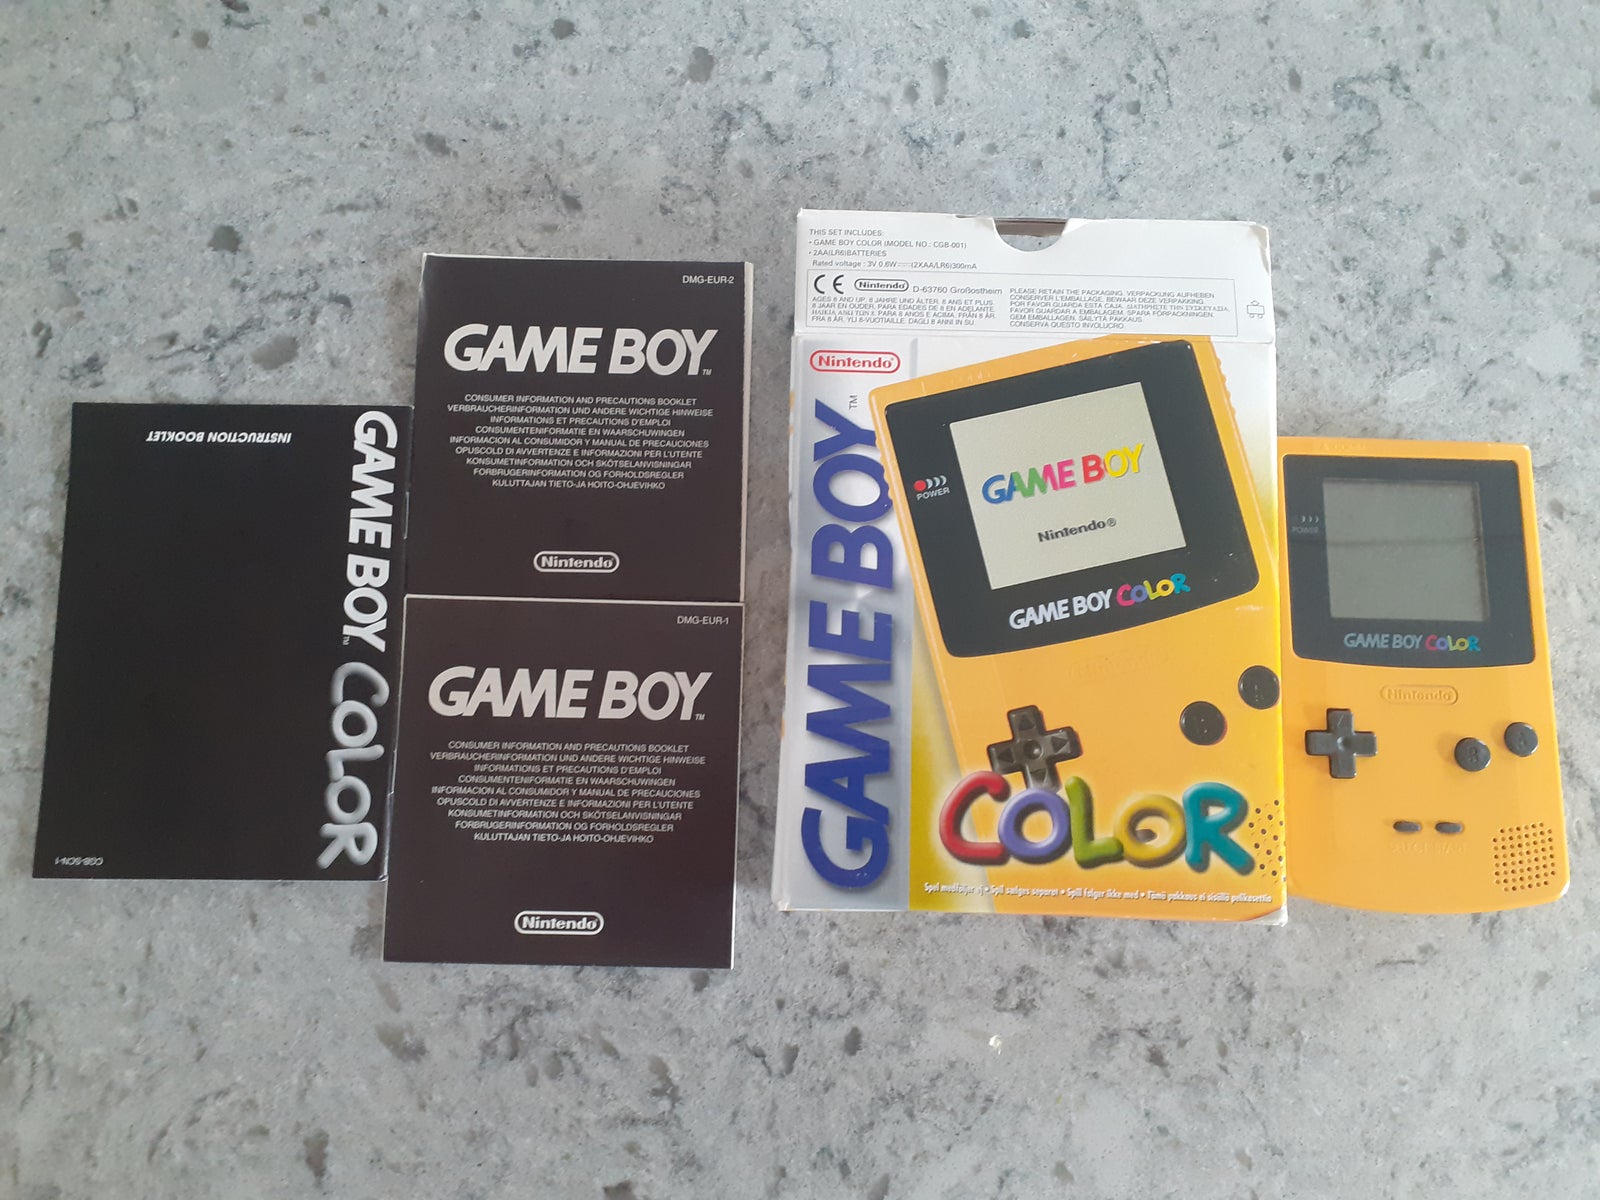 Nintendo Game Boy Color, God